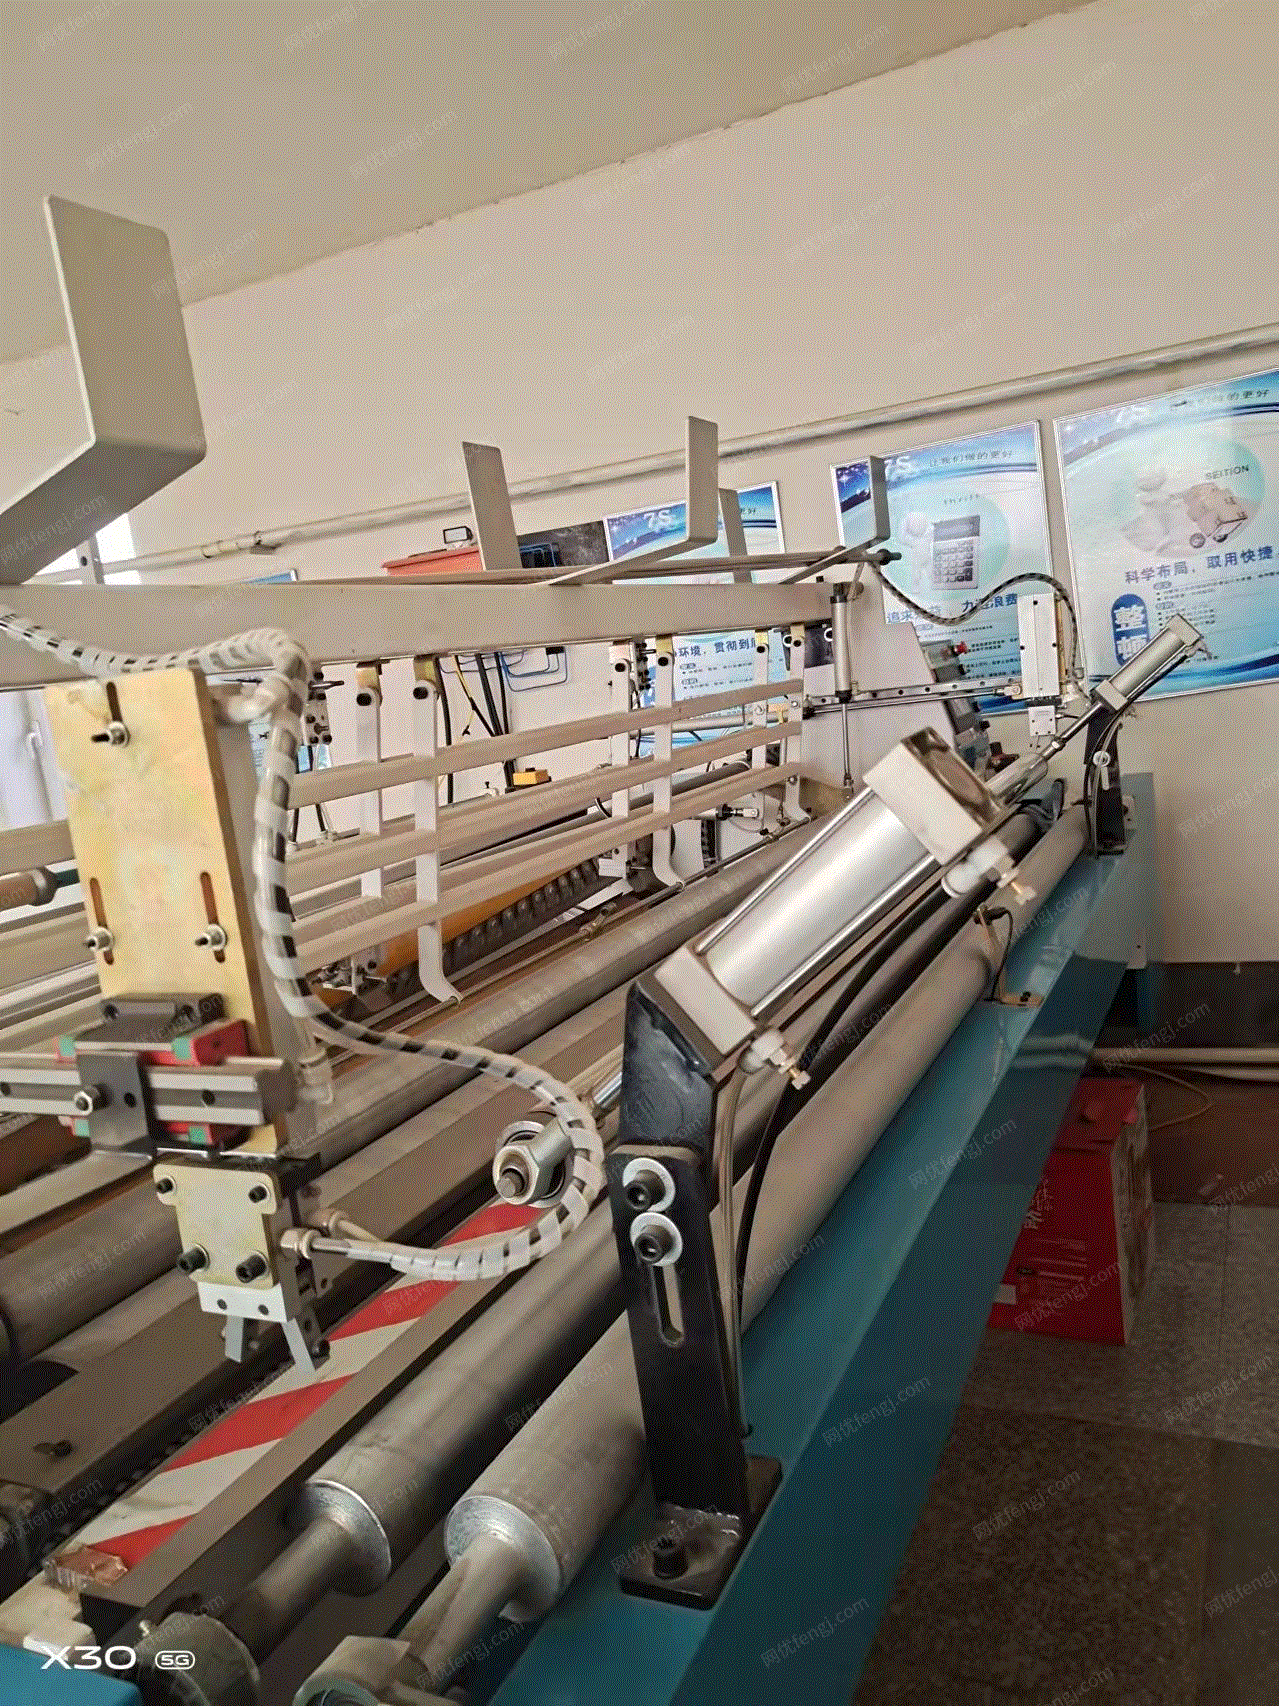 纸厂处理许昌卫生纸设备1套,含1880全自动复卷机,切纸机,卷纸机等设备,前年买的,看货报价,有图片